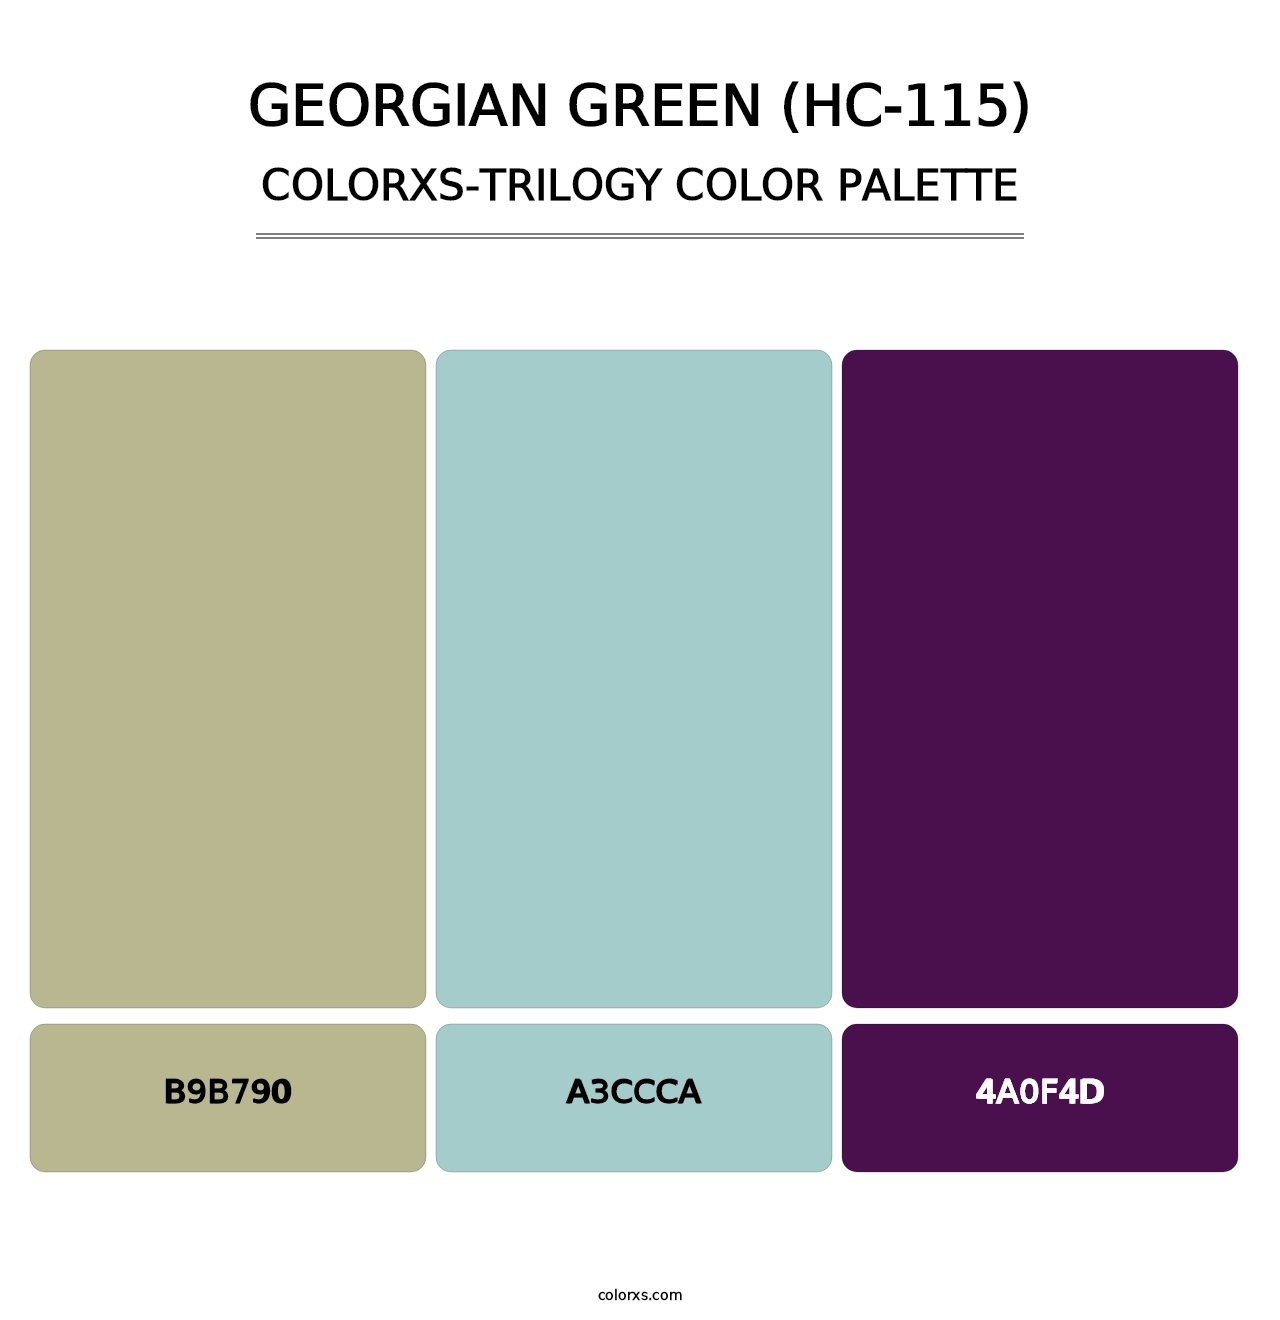 Georgian Green (HC-115) - Colorxs Trilogy Palette